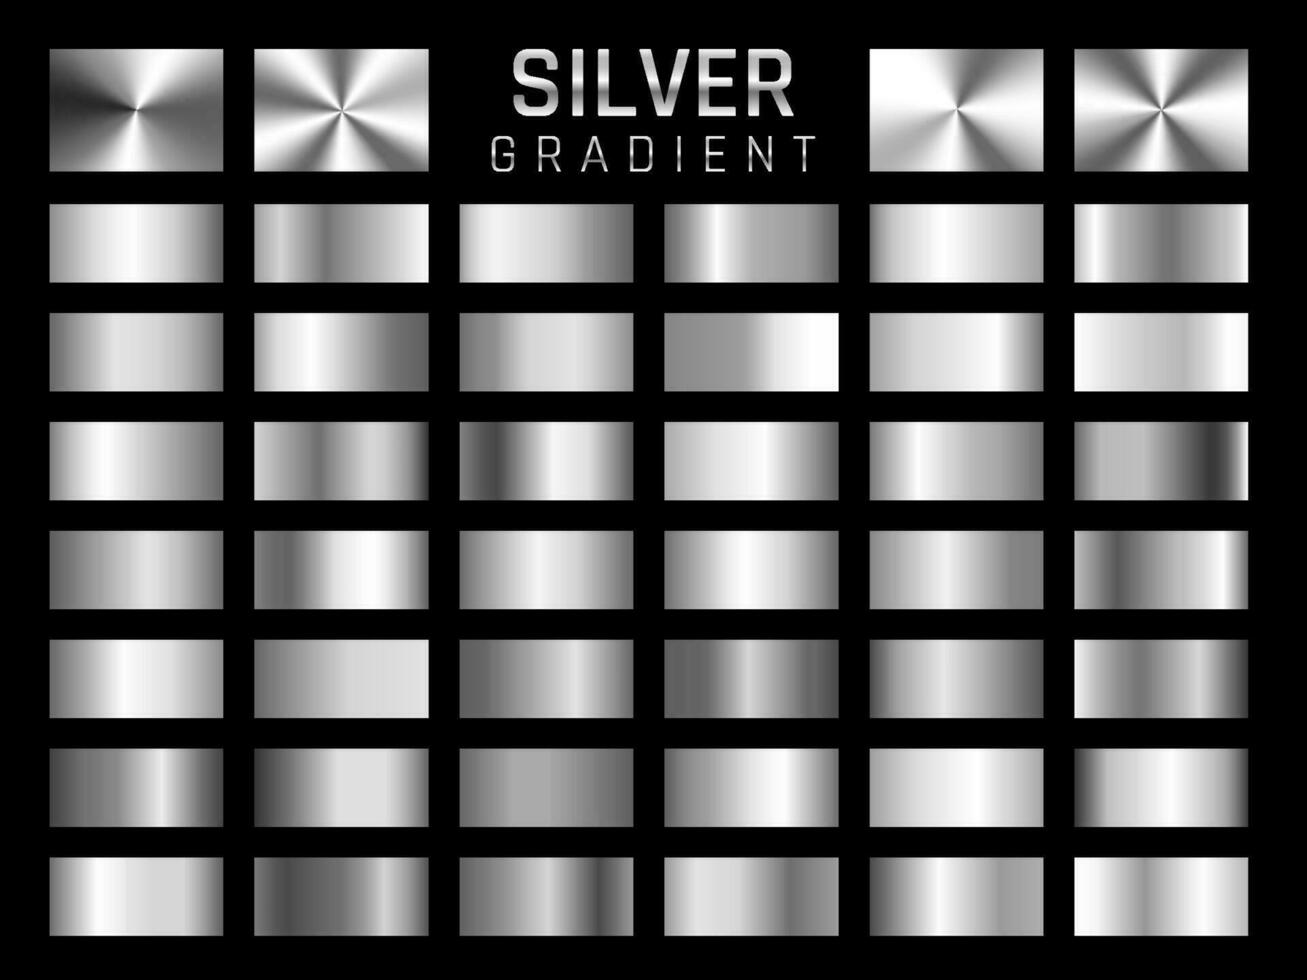 coleção de prata, gradiente metálico cromado. placas brilhantes com efeito prateado. ilustração vetorial vetor